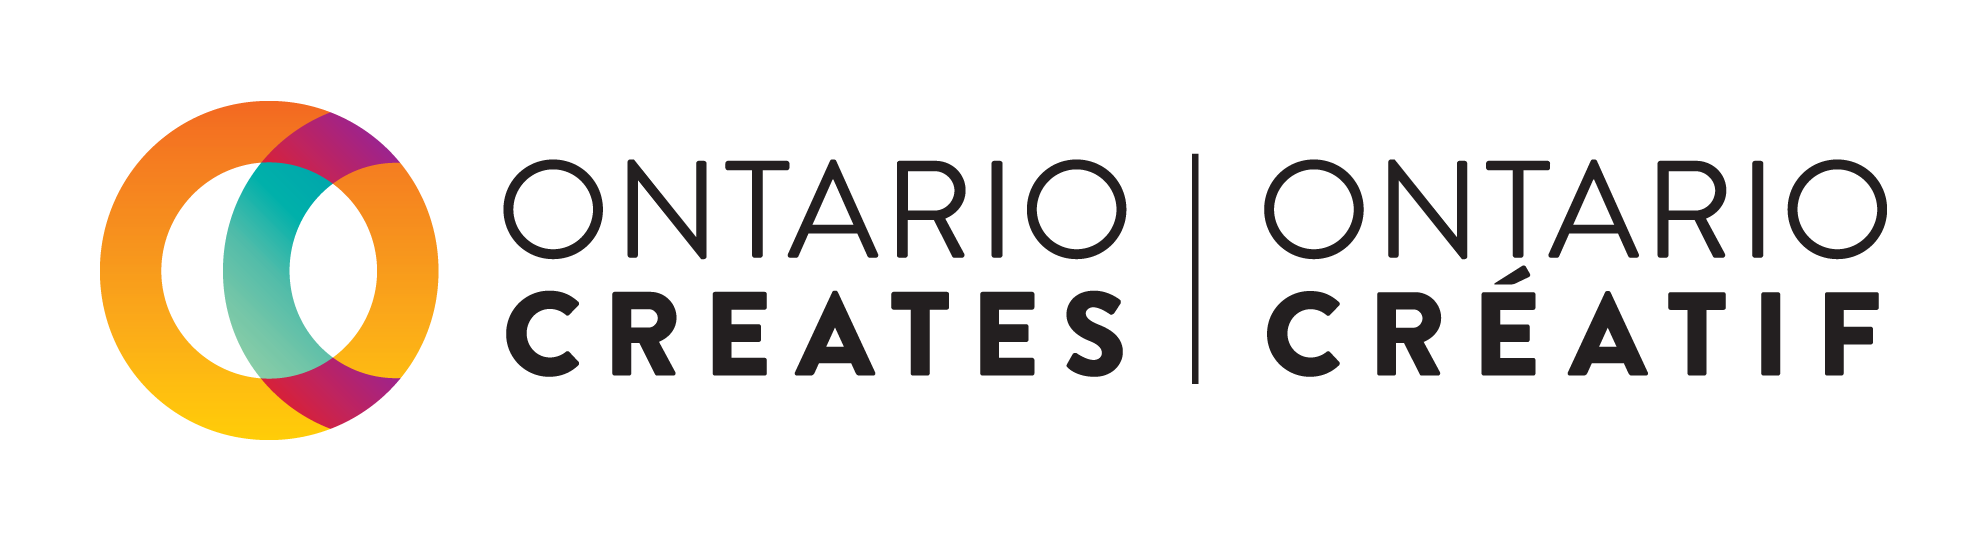 Ontario Creates Ontario Créatif